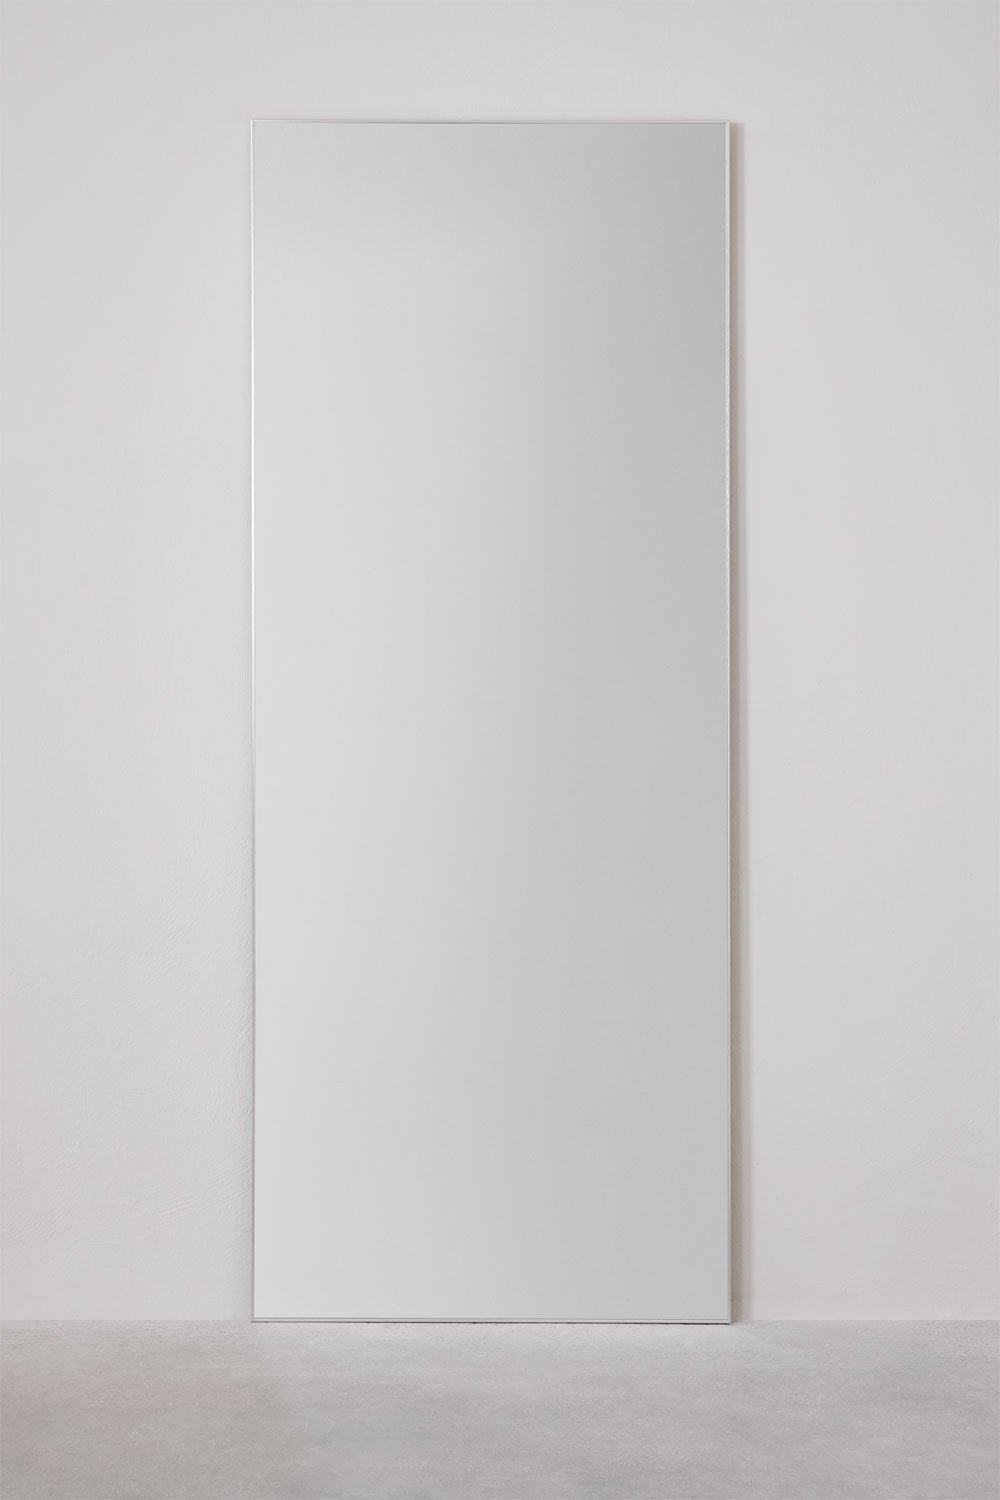 Prostokątne aluminiowe lustro stojące (80x200 cm) Ondra, obrazek w galerii 2